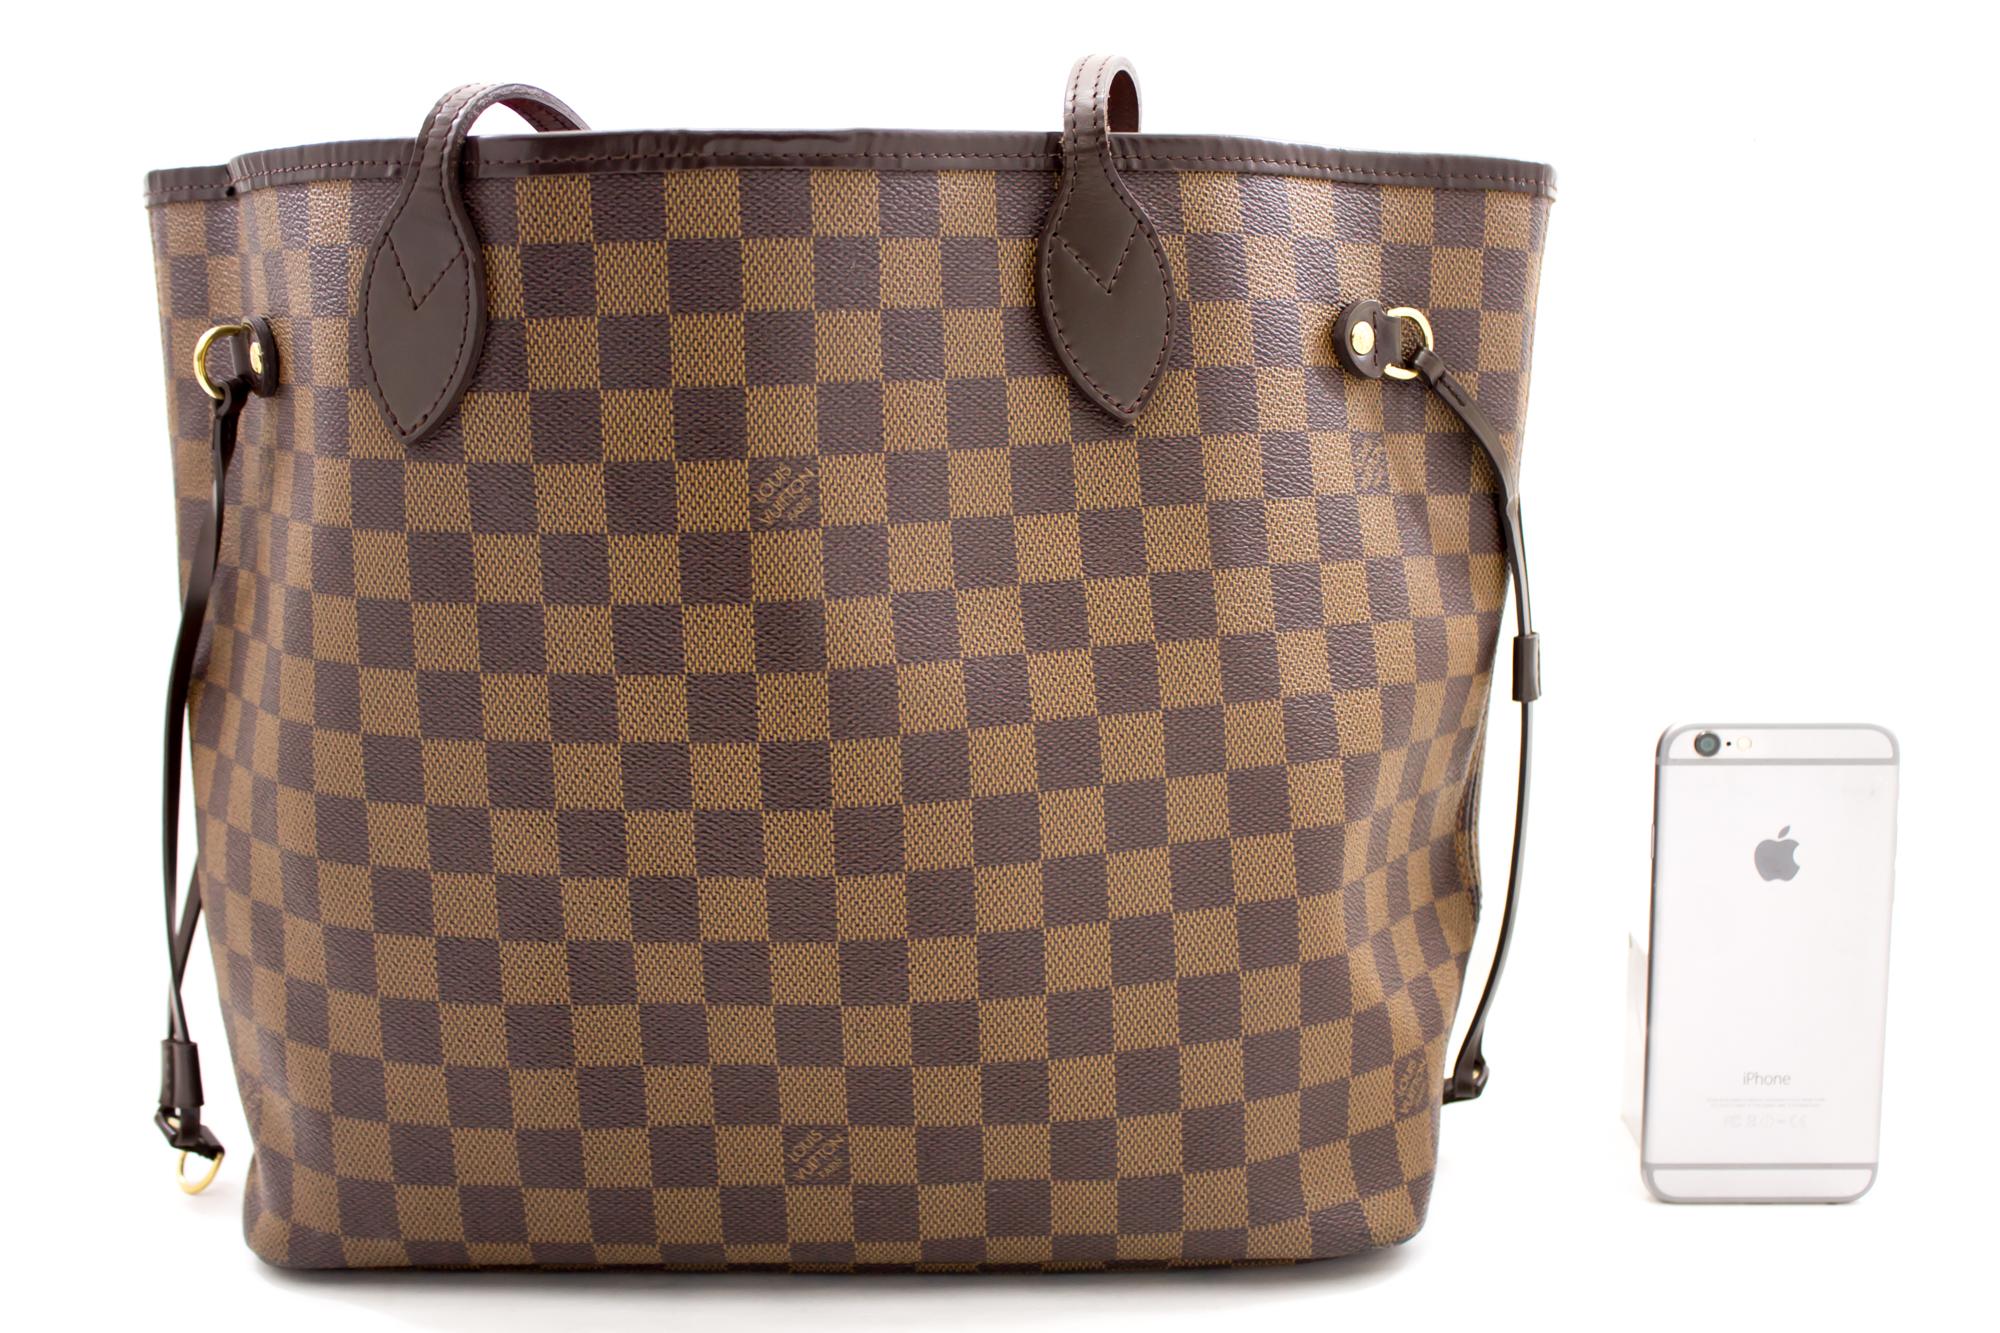 Black Louis Vuitton Damier Ebene Neverfull MM Shoulder Bag Canvas Purse Leather